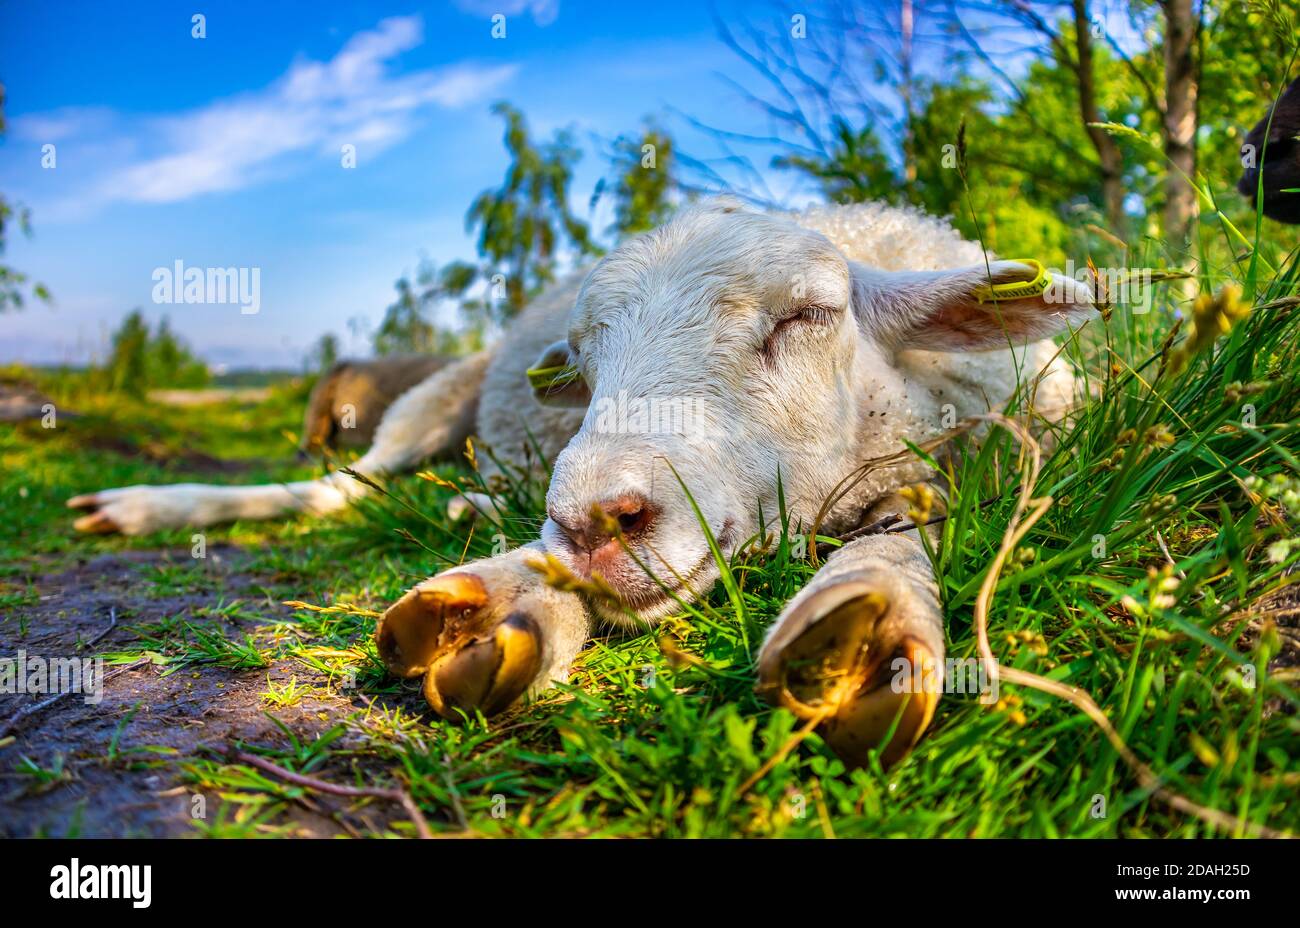 Gros plan de jolis moutons blancs dormant sur de l'herbe verte dans le champ. Bonne agneaux et détente dans la nature, prairie. Jour ensoleillé. Bétail. Concept Faming. Banque D'Images